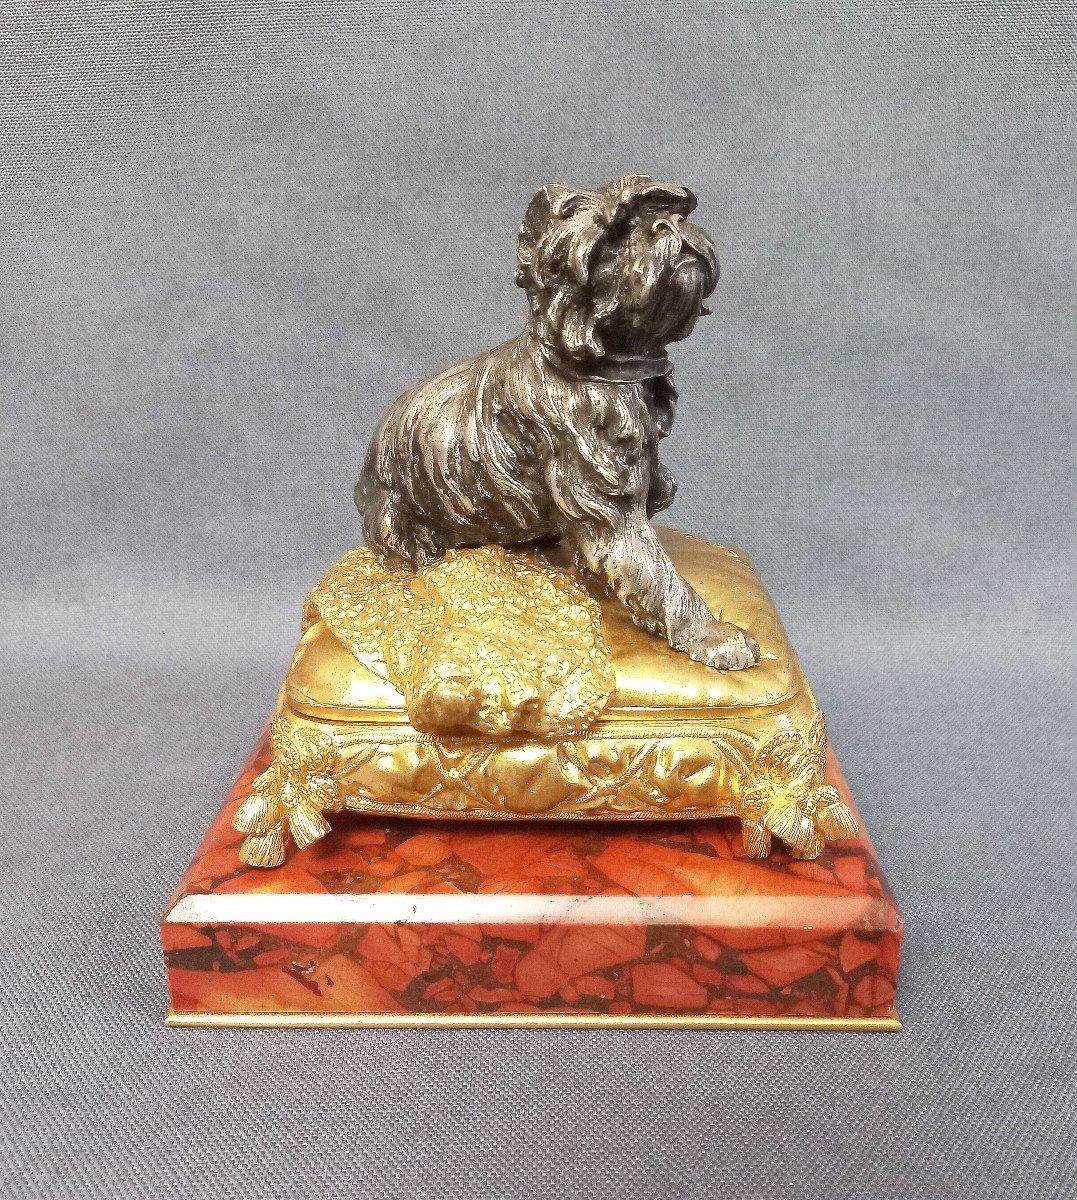 Prosper Lecourtier, ziselierte und vergoldete Bronzeschmuckschatulle, die einen kleinen ziselierten und versilberten Bronzehund auf einem mit Verzierungen geschmückten Kissen auf einem roten Marmorsockel darstellt.
Innen gepolstert in blauem